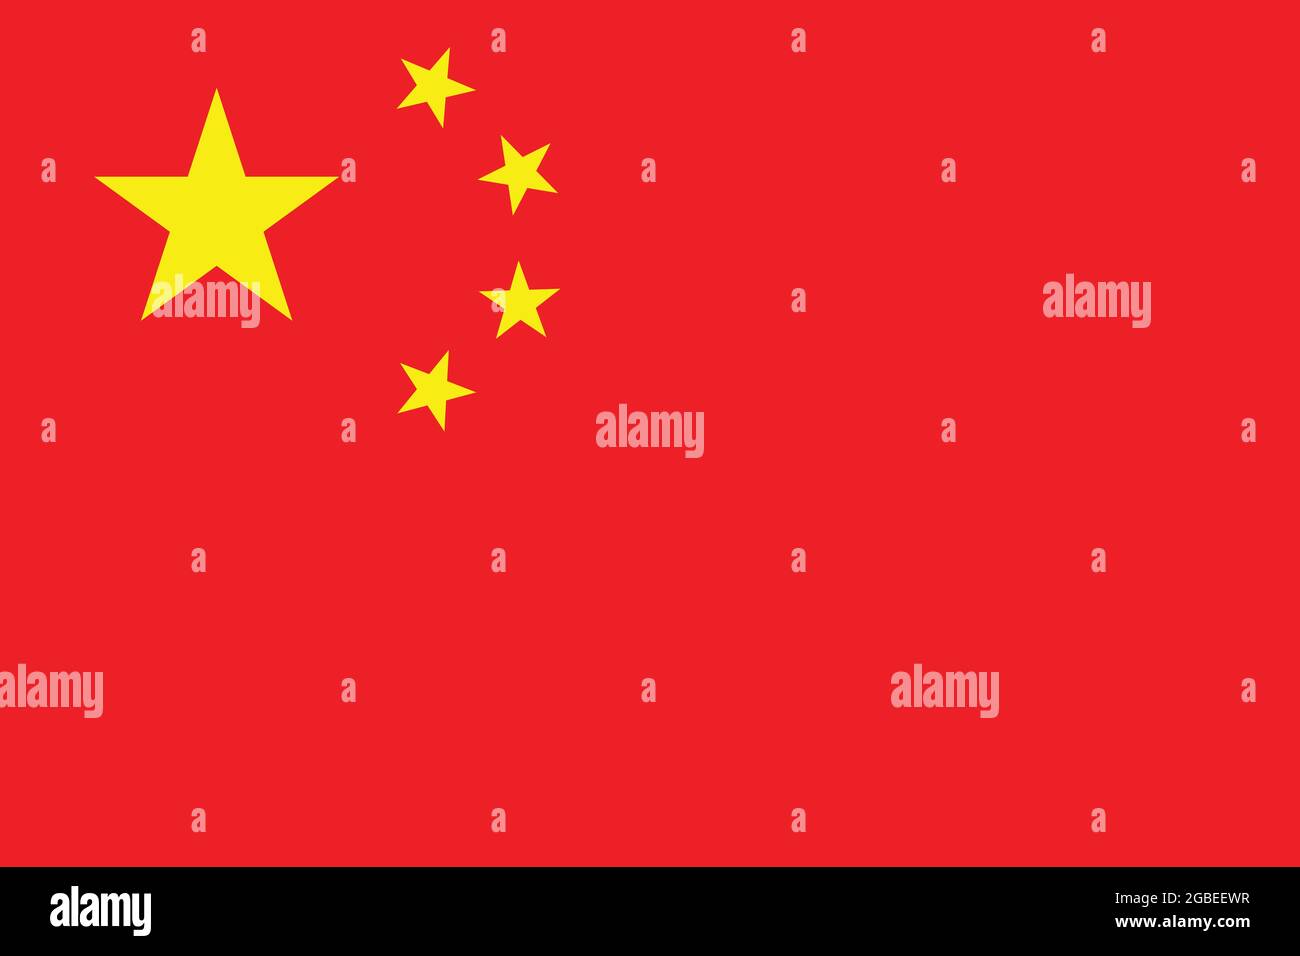 Flagge Chinas in Originalgröße und Farben Vektorgrafik, Nationale Flagge der Volksrepublik China, fünf-Sterne-rote Flagge, chinesische kommunistische Flagge Stock Vektor